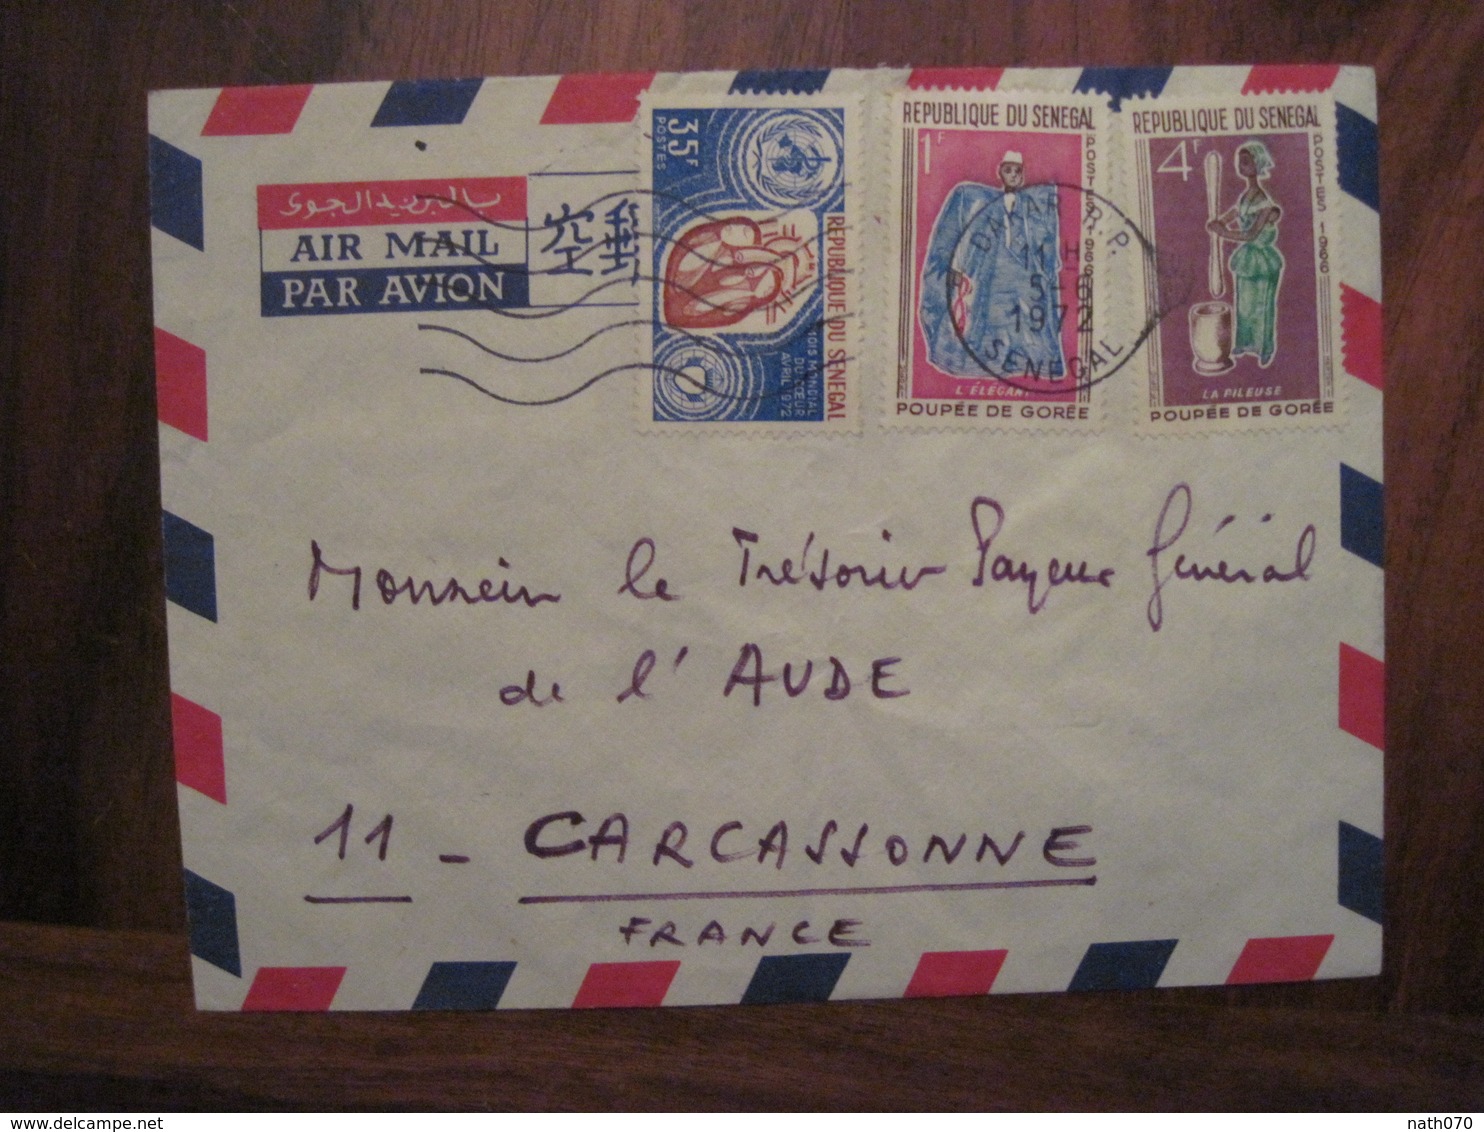 SENEGAL 1972 CARCASSONNE Cover Enveloppe Air Mail Par Avion Mois Mondial Du Coeur 35f Poupée De Gorée 4f + 1f - Senegal (1960-...)